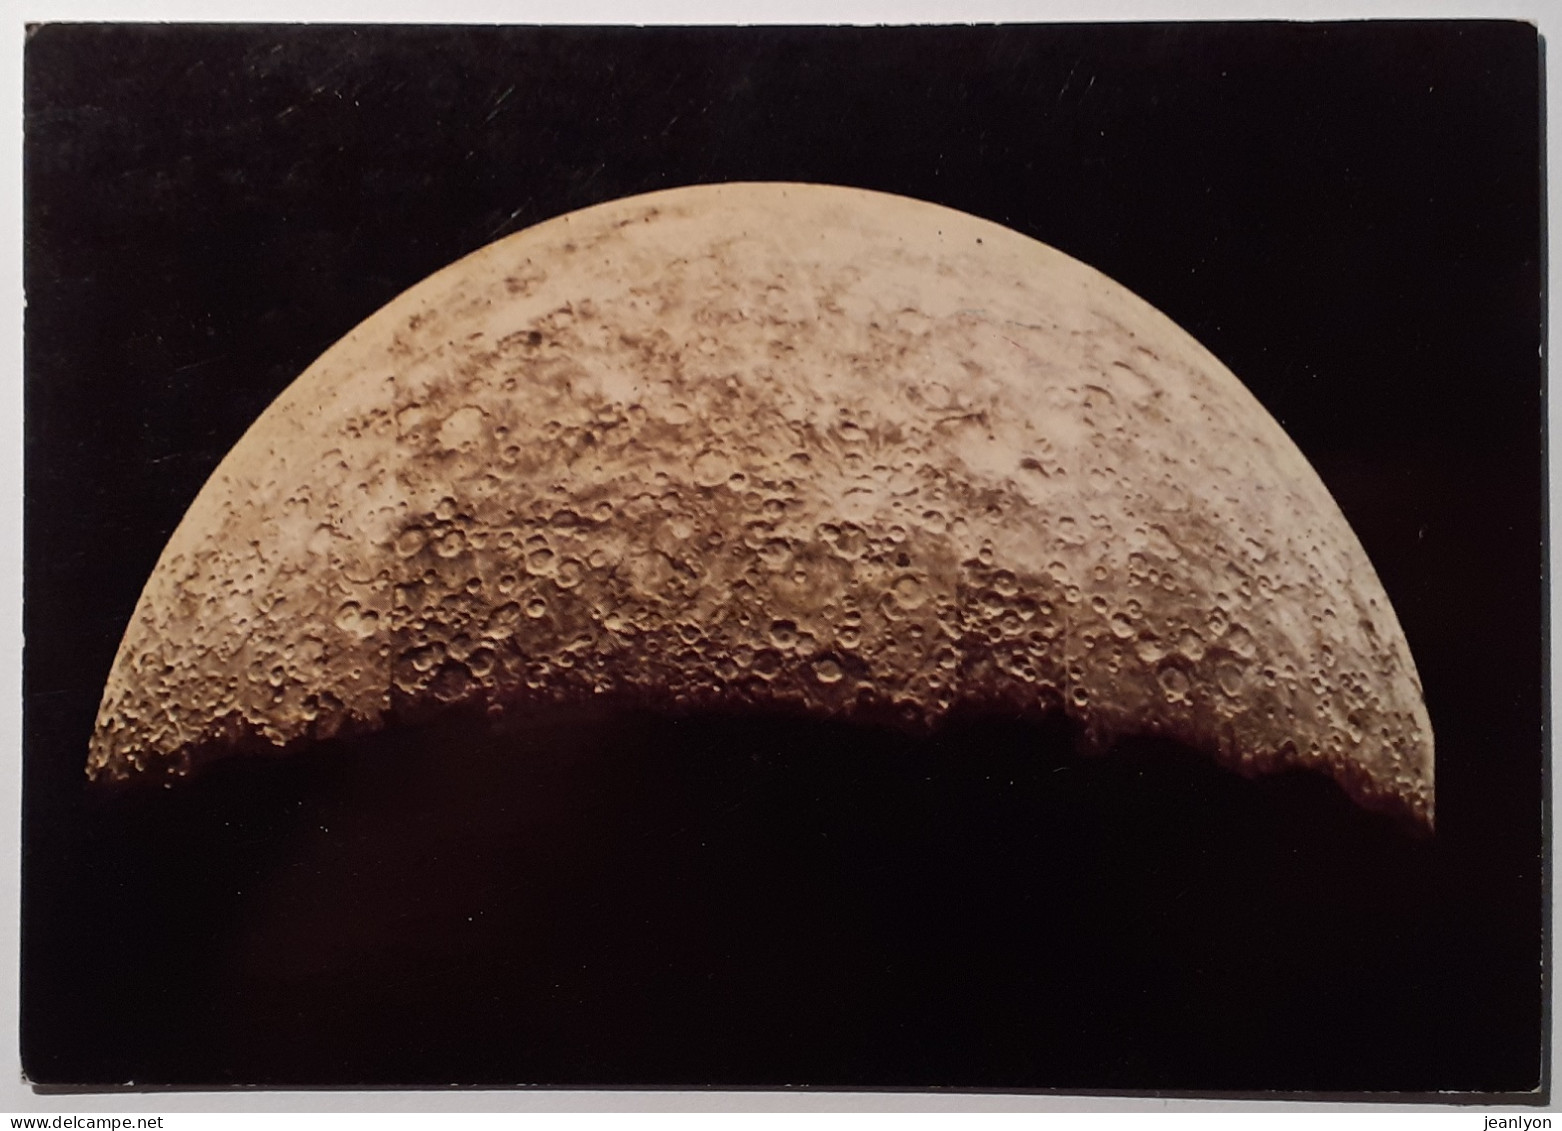 ESPACE - MARINER 10 - Planete MERCURE Vue De 200 000 Km En Mars 1974 - Carte Postale Moderne - Astronomie